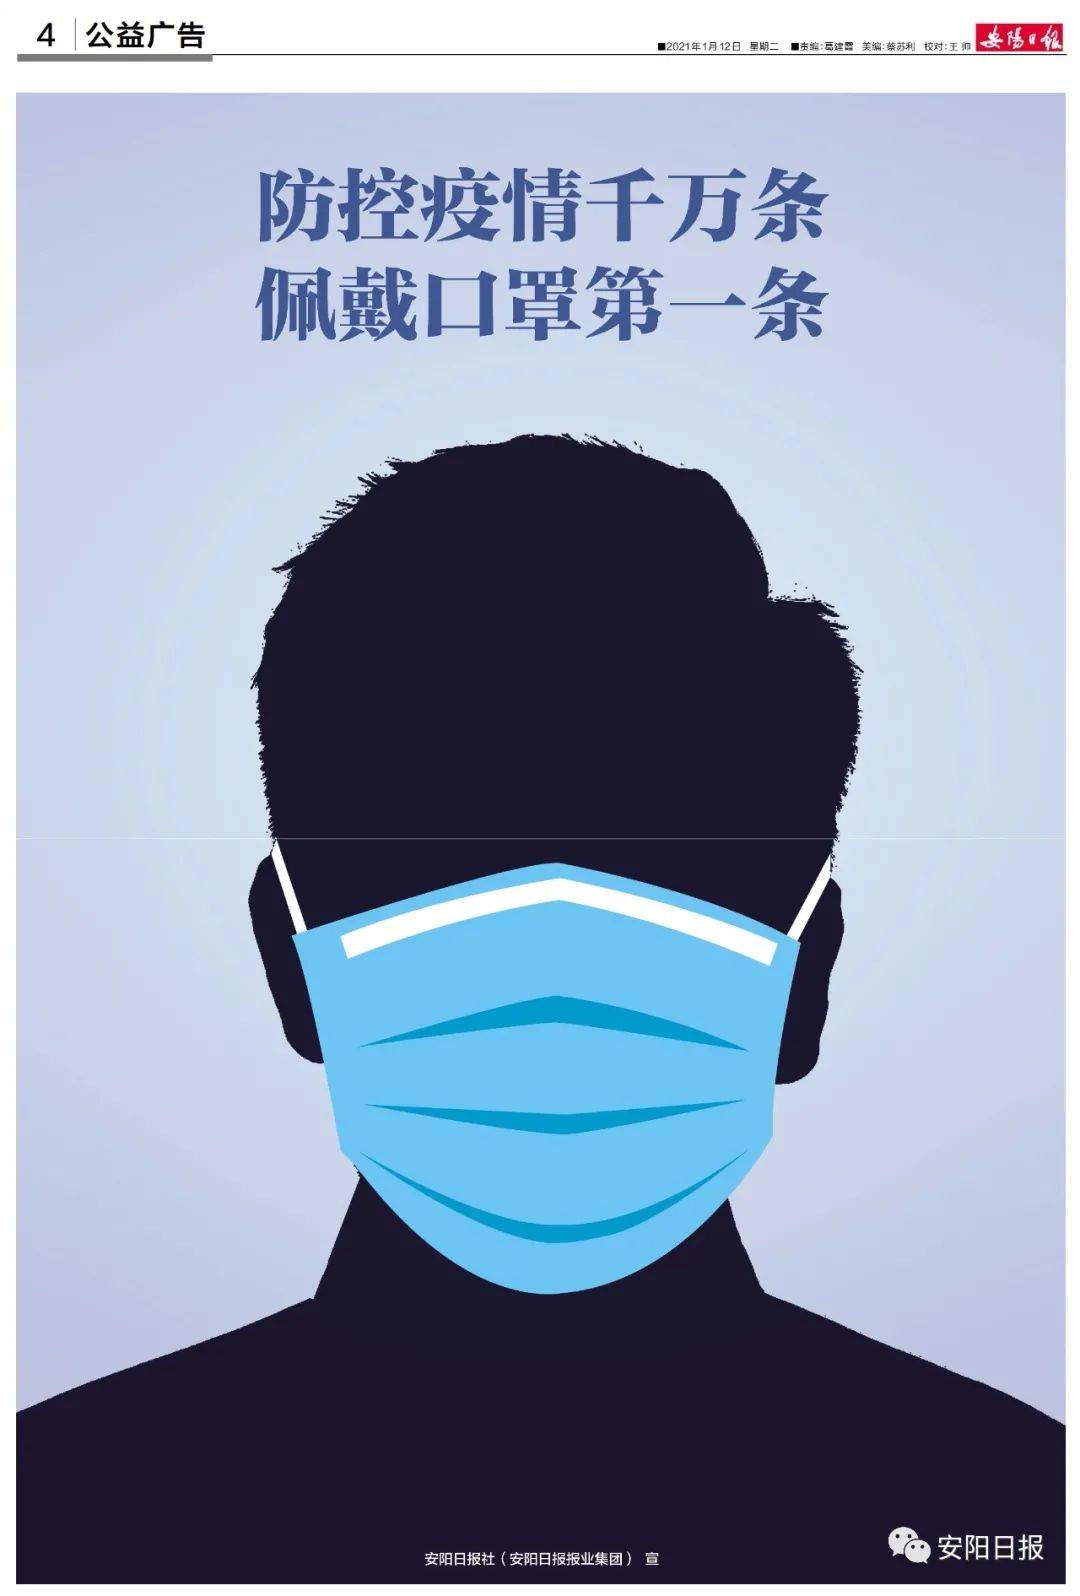 公益广告丨防控疫情千万条 佩戴口罩第一条